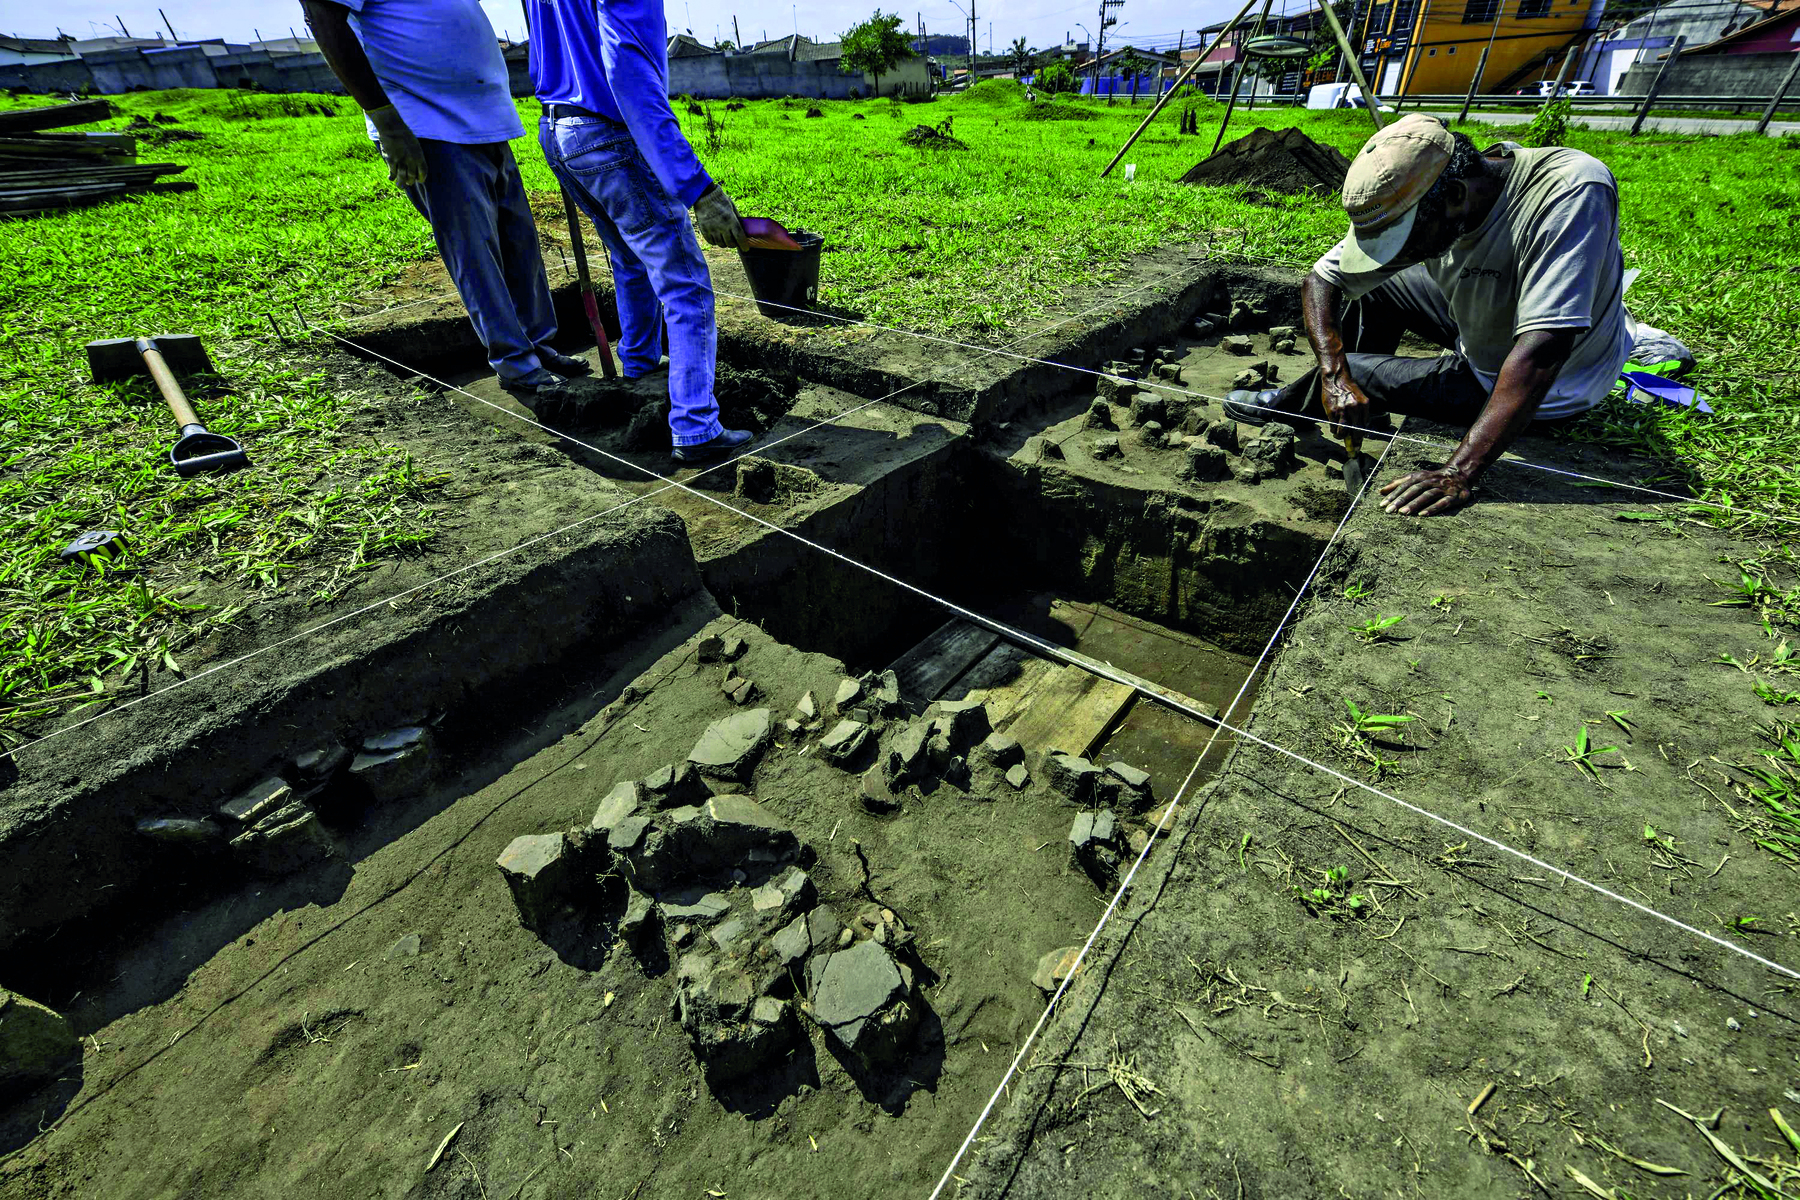 Fotografia. Uma área de escavação arqueológica. Percebe-se que os blocos de escavação são feitos em medidas retangulares. Dois homens estão em pé em um dos retângulos à esquerda e um terceiro homem está abaixado escavando em um retângulo mais à direita. A vegetação ao redor é rasteira.